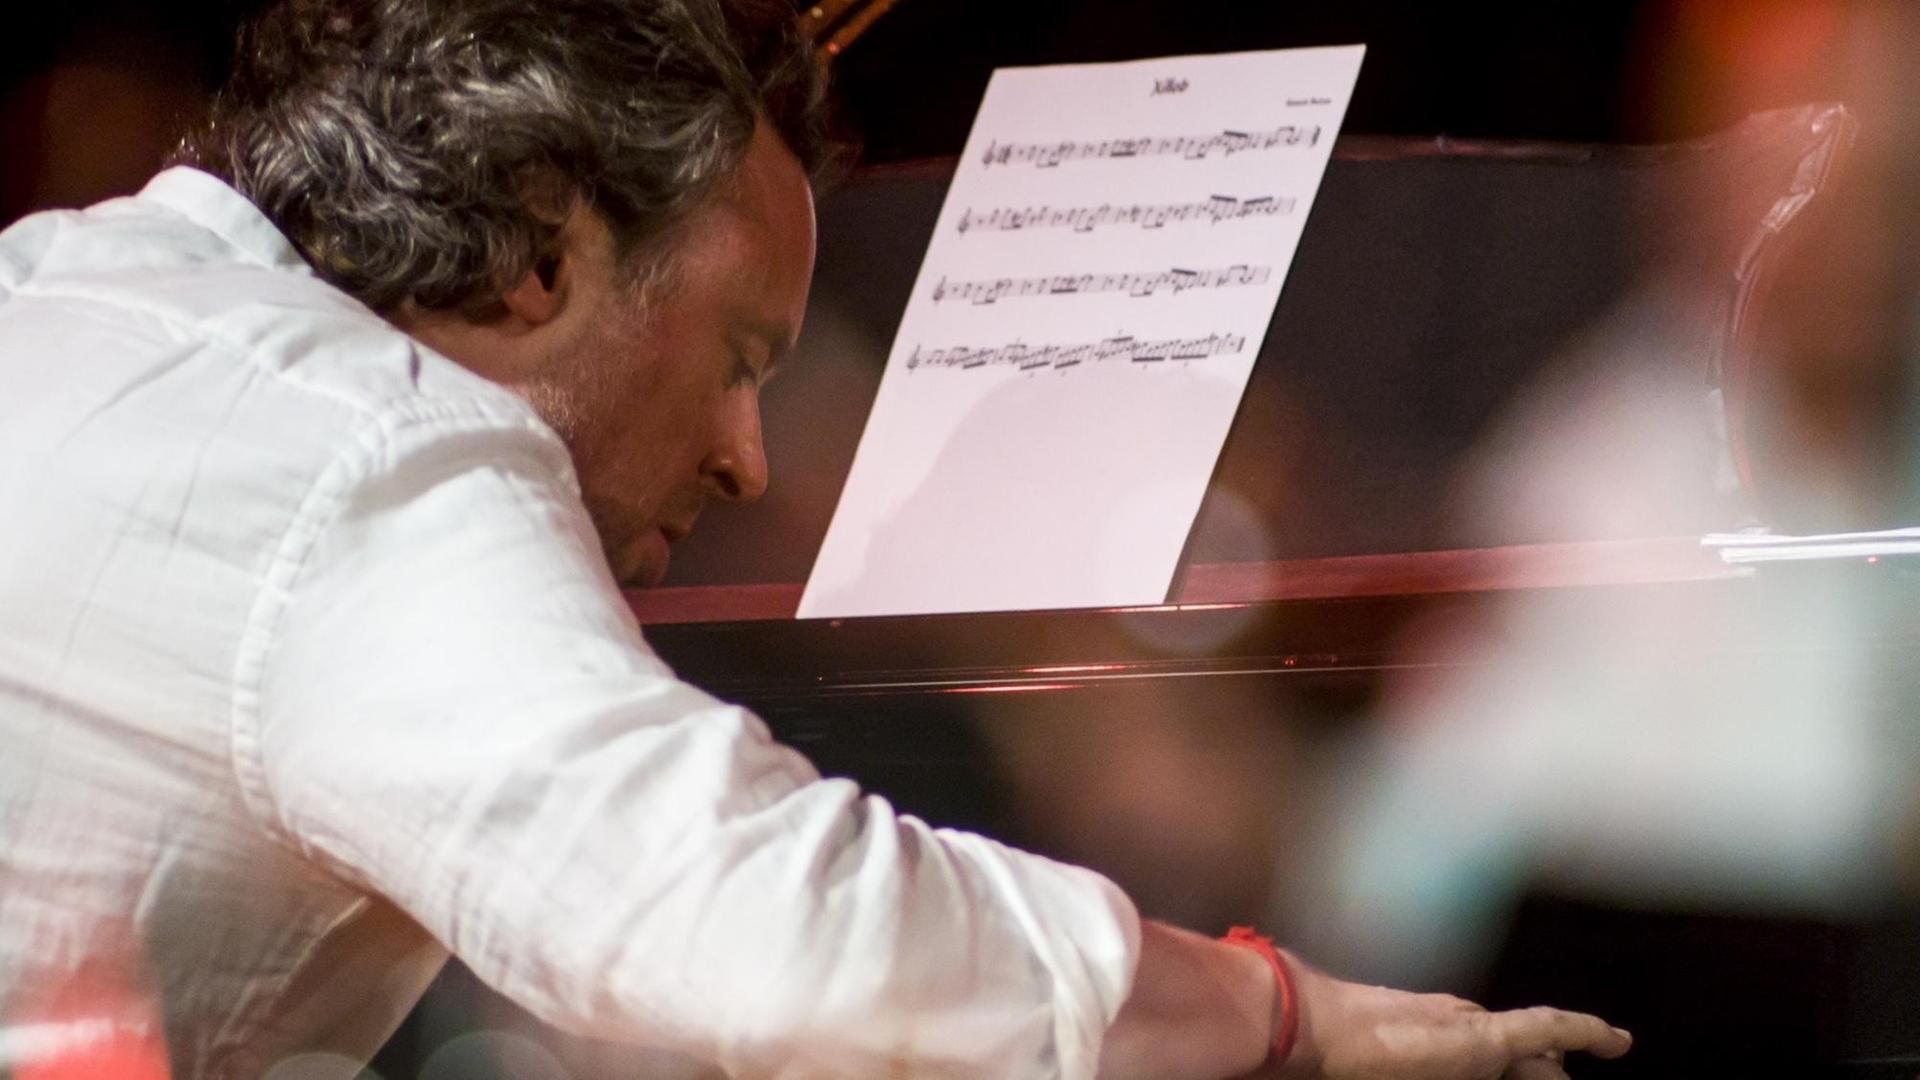 Ein Mann im weißen Hemd spielt mit gesenktem Kopf und gebeugtem Rücken Klavier. Er ist dabei seitlich von hinten zu sehen.